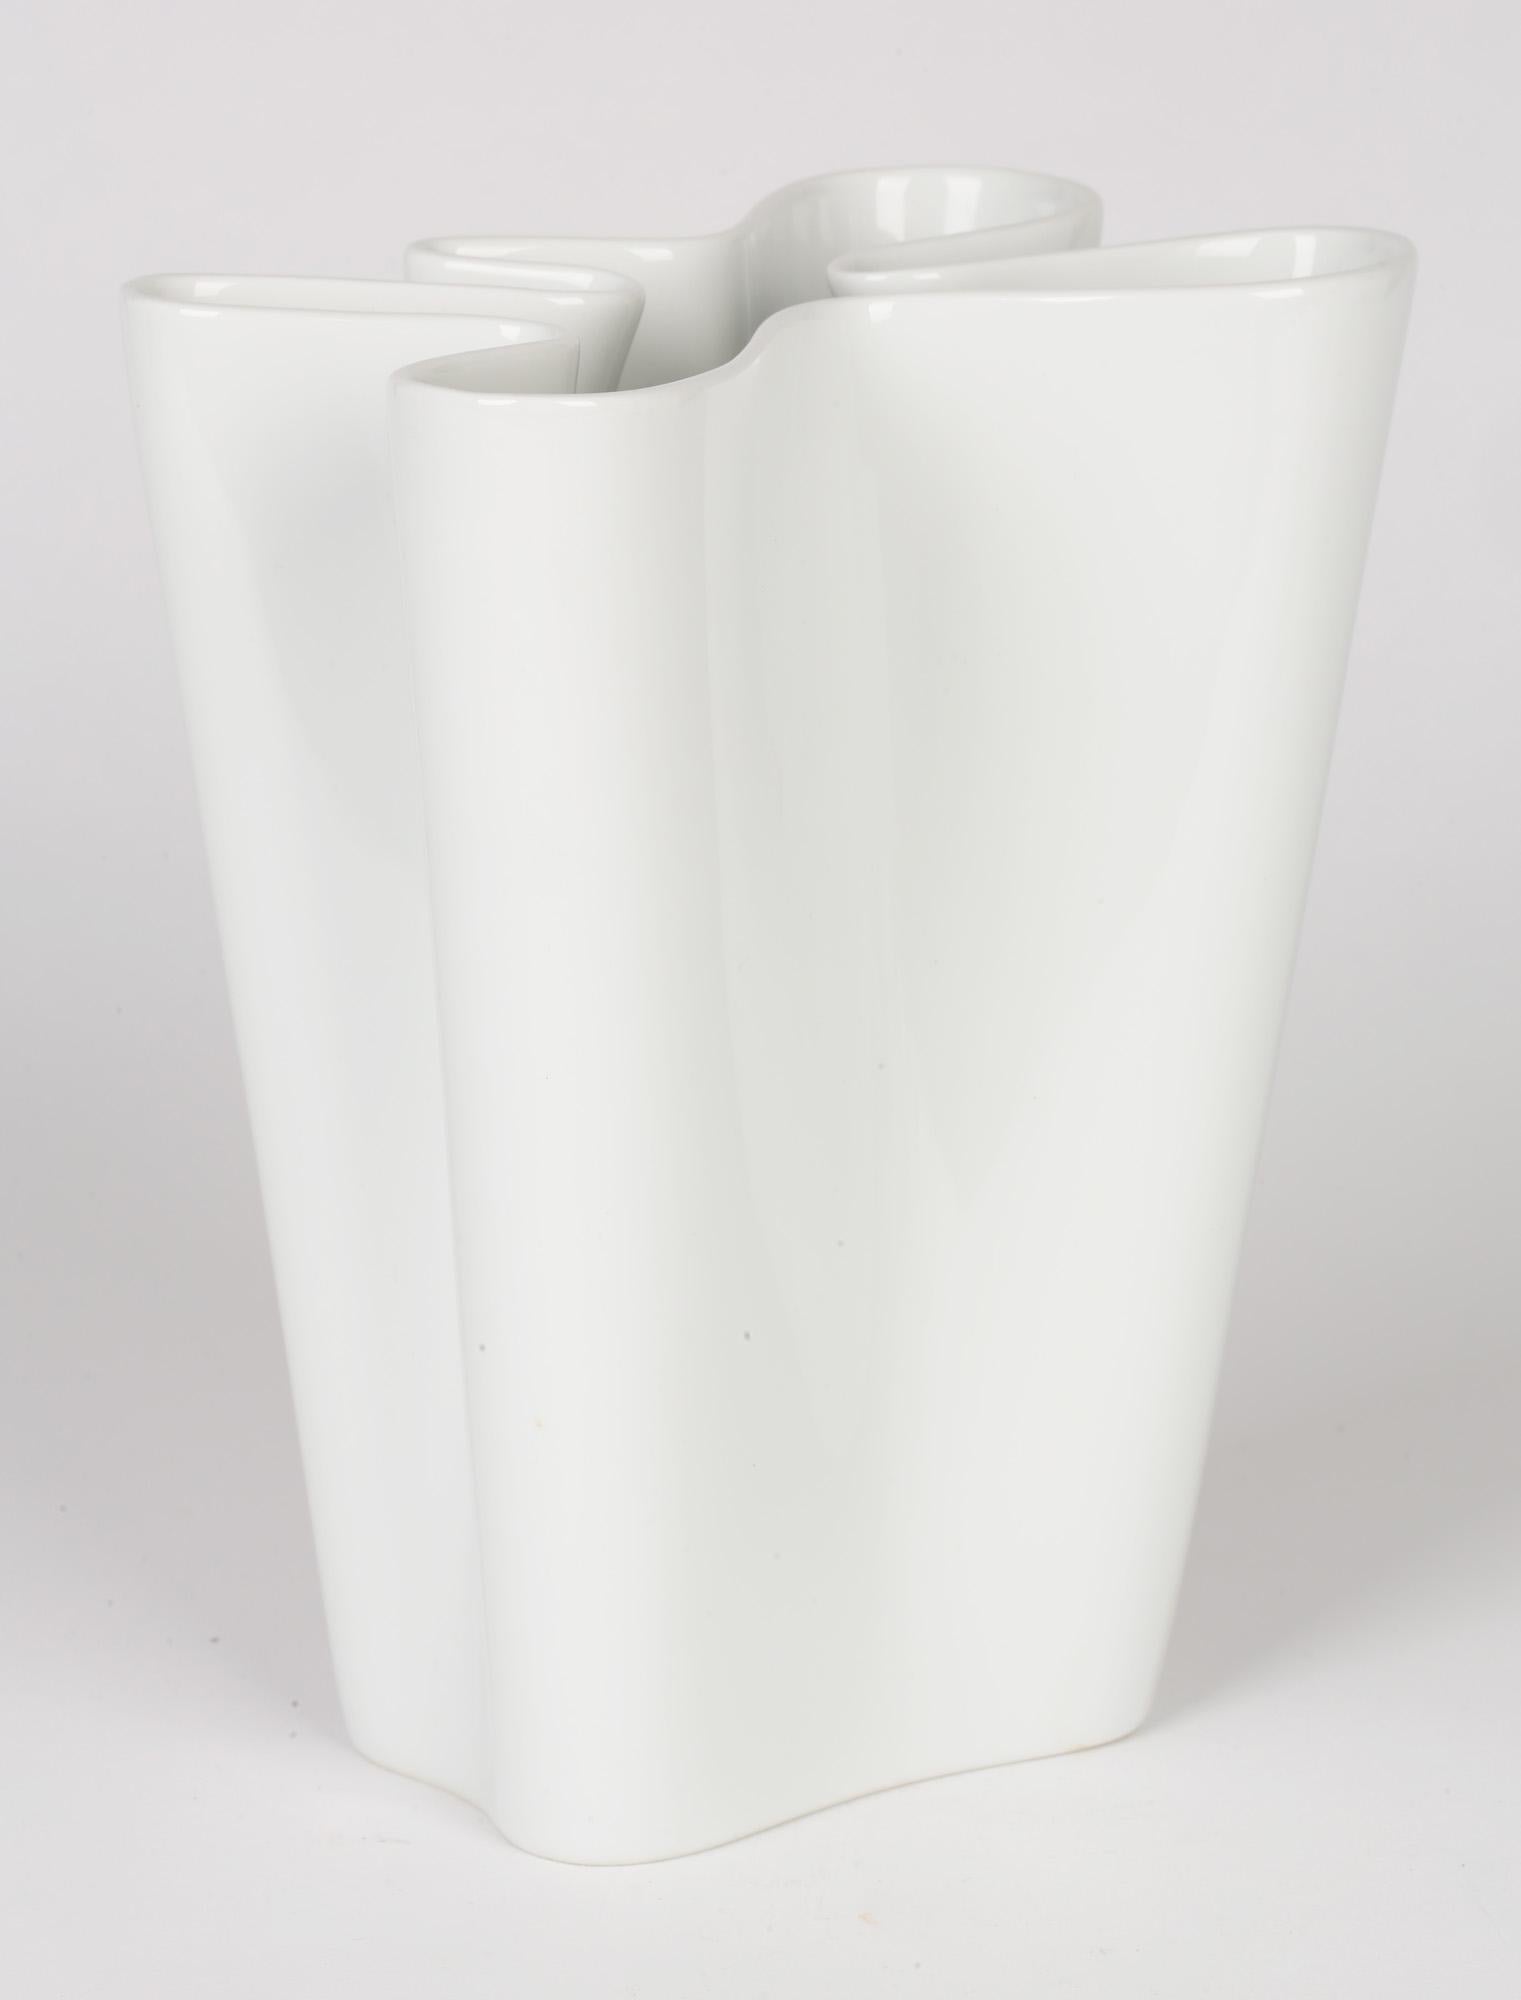 Rosenthal German Studio-Line Porcelain White Flux Vase 5